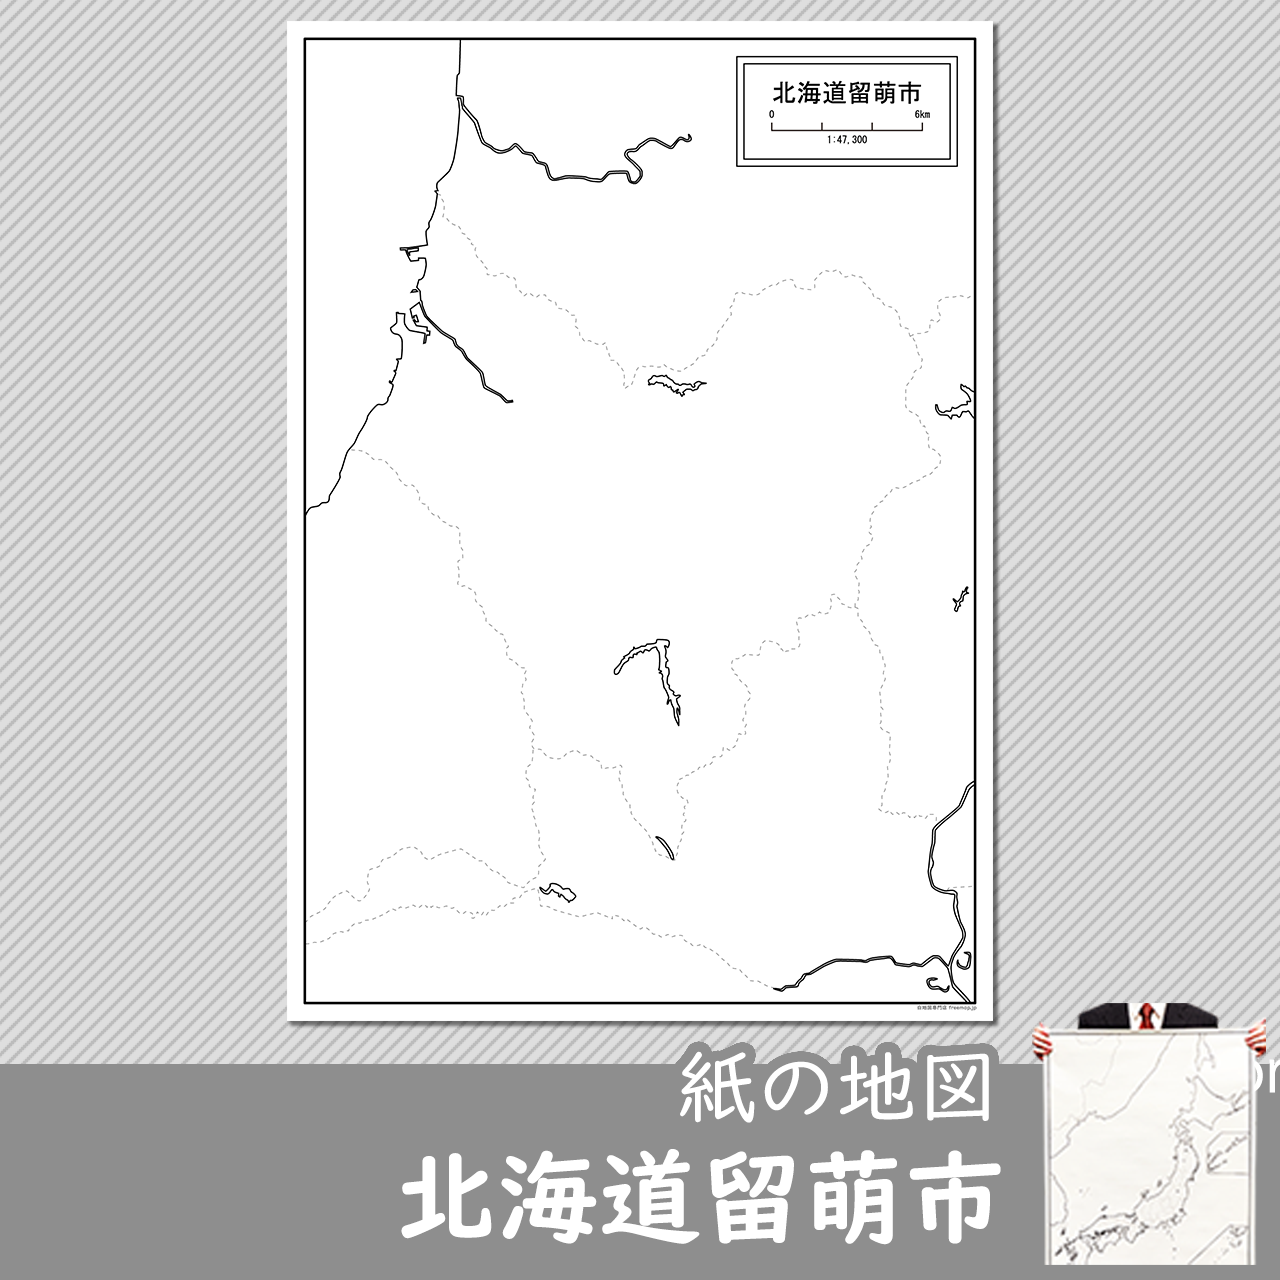 留萌市の紙の白地図のサムネイル